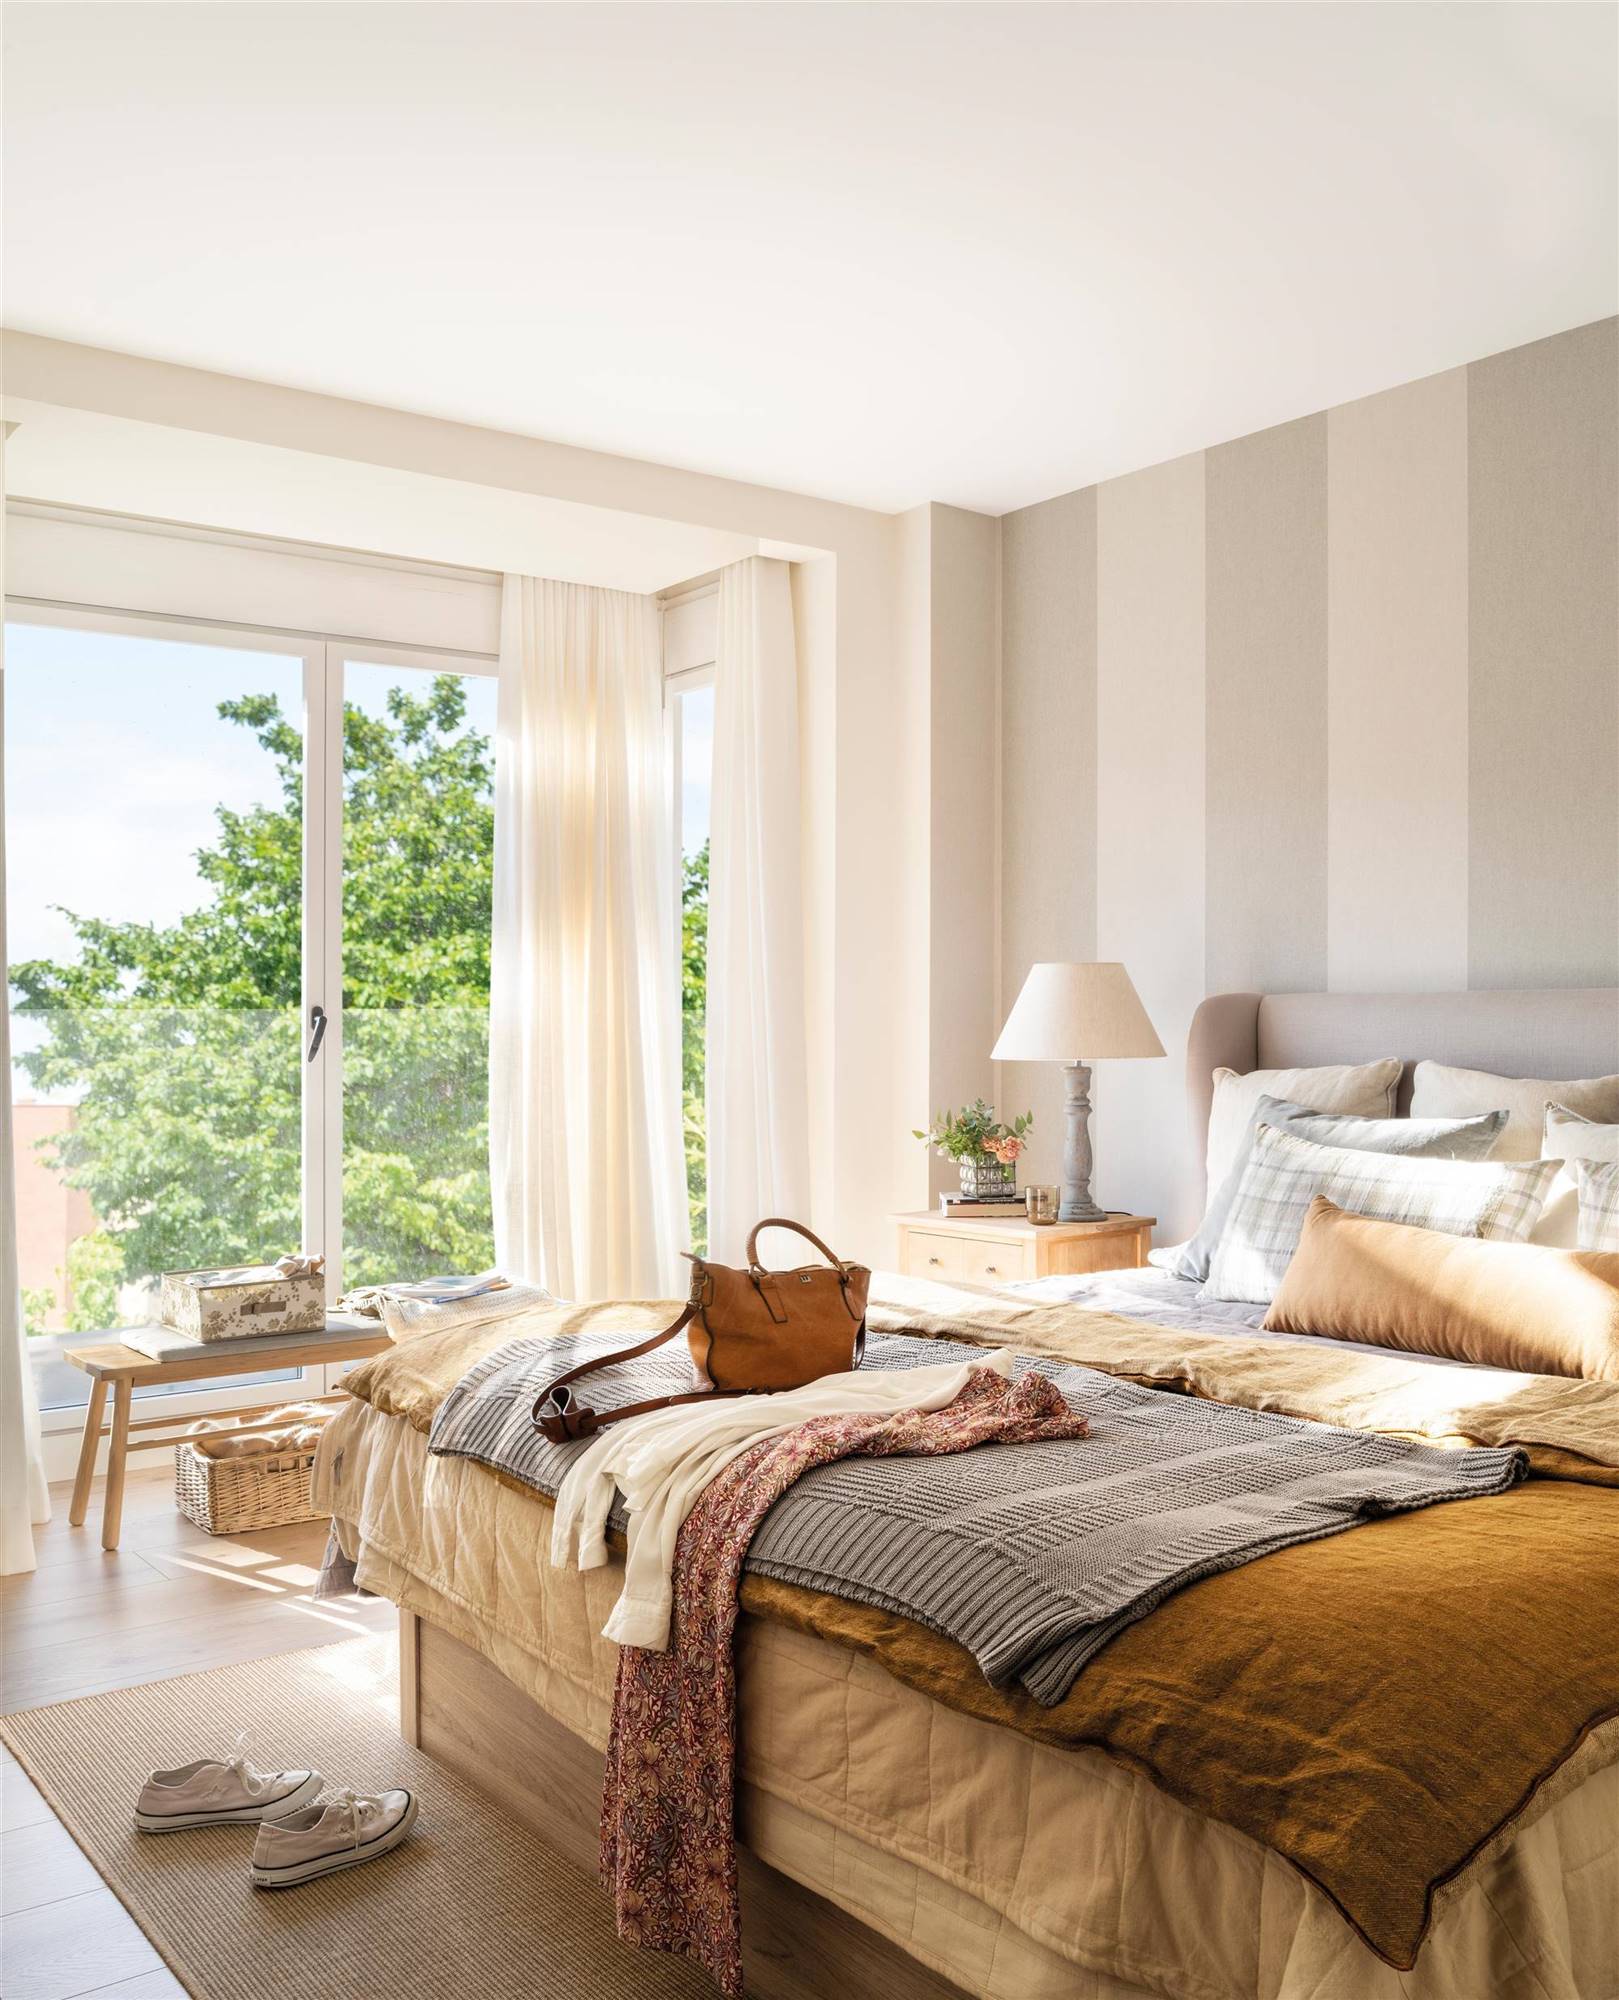 Dormitorio decorado con papel pintado a rayas en colores blanco y gris 00517100